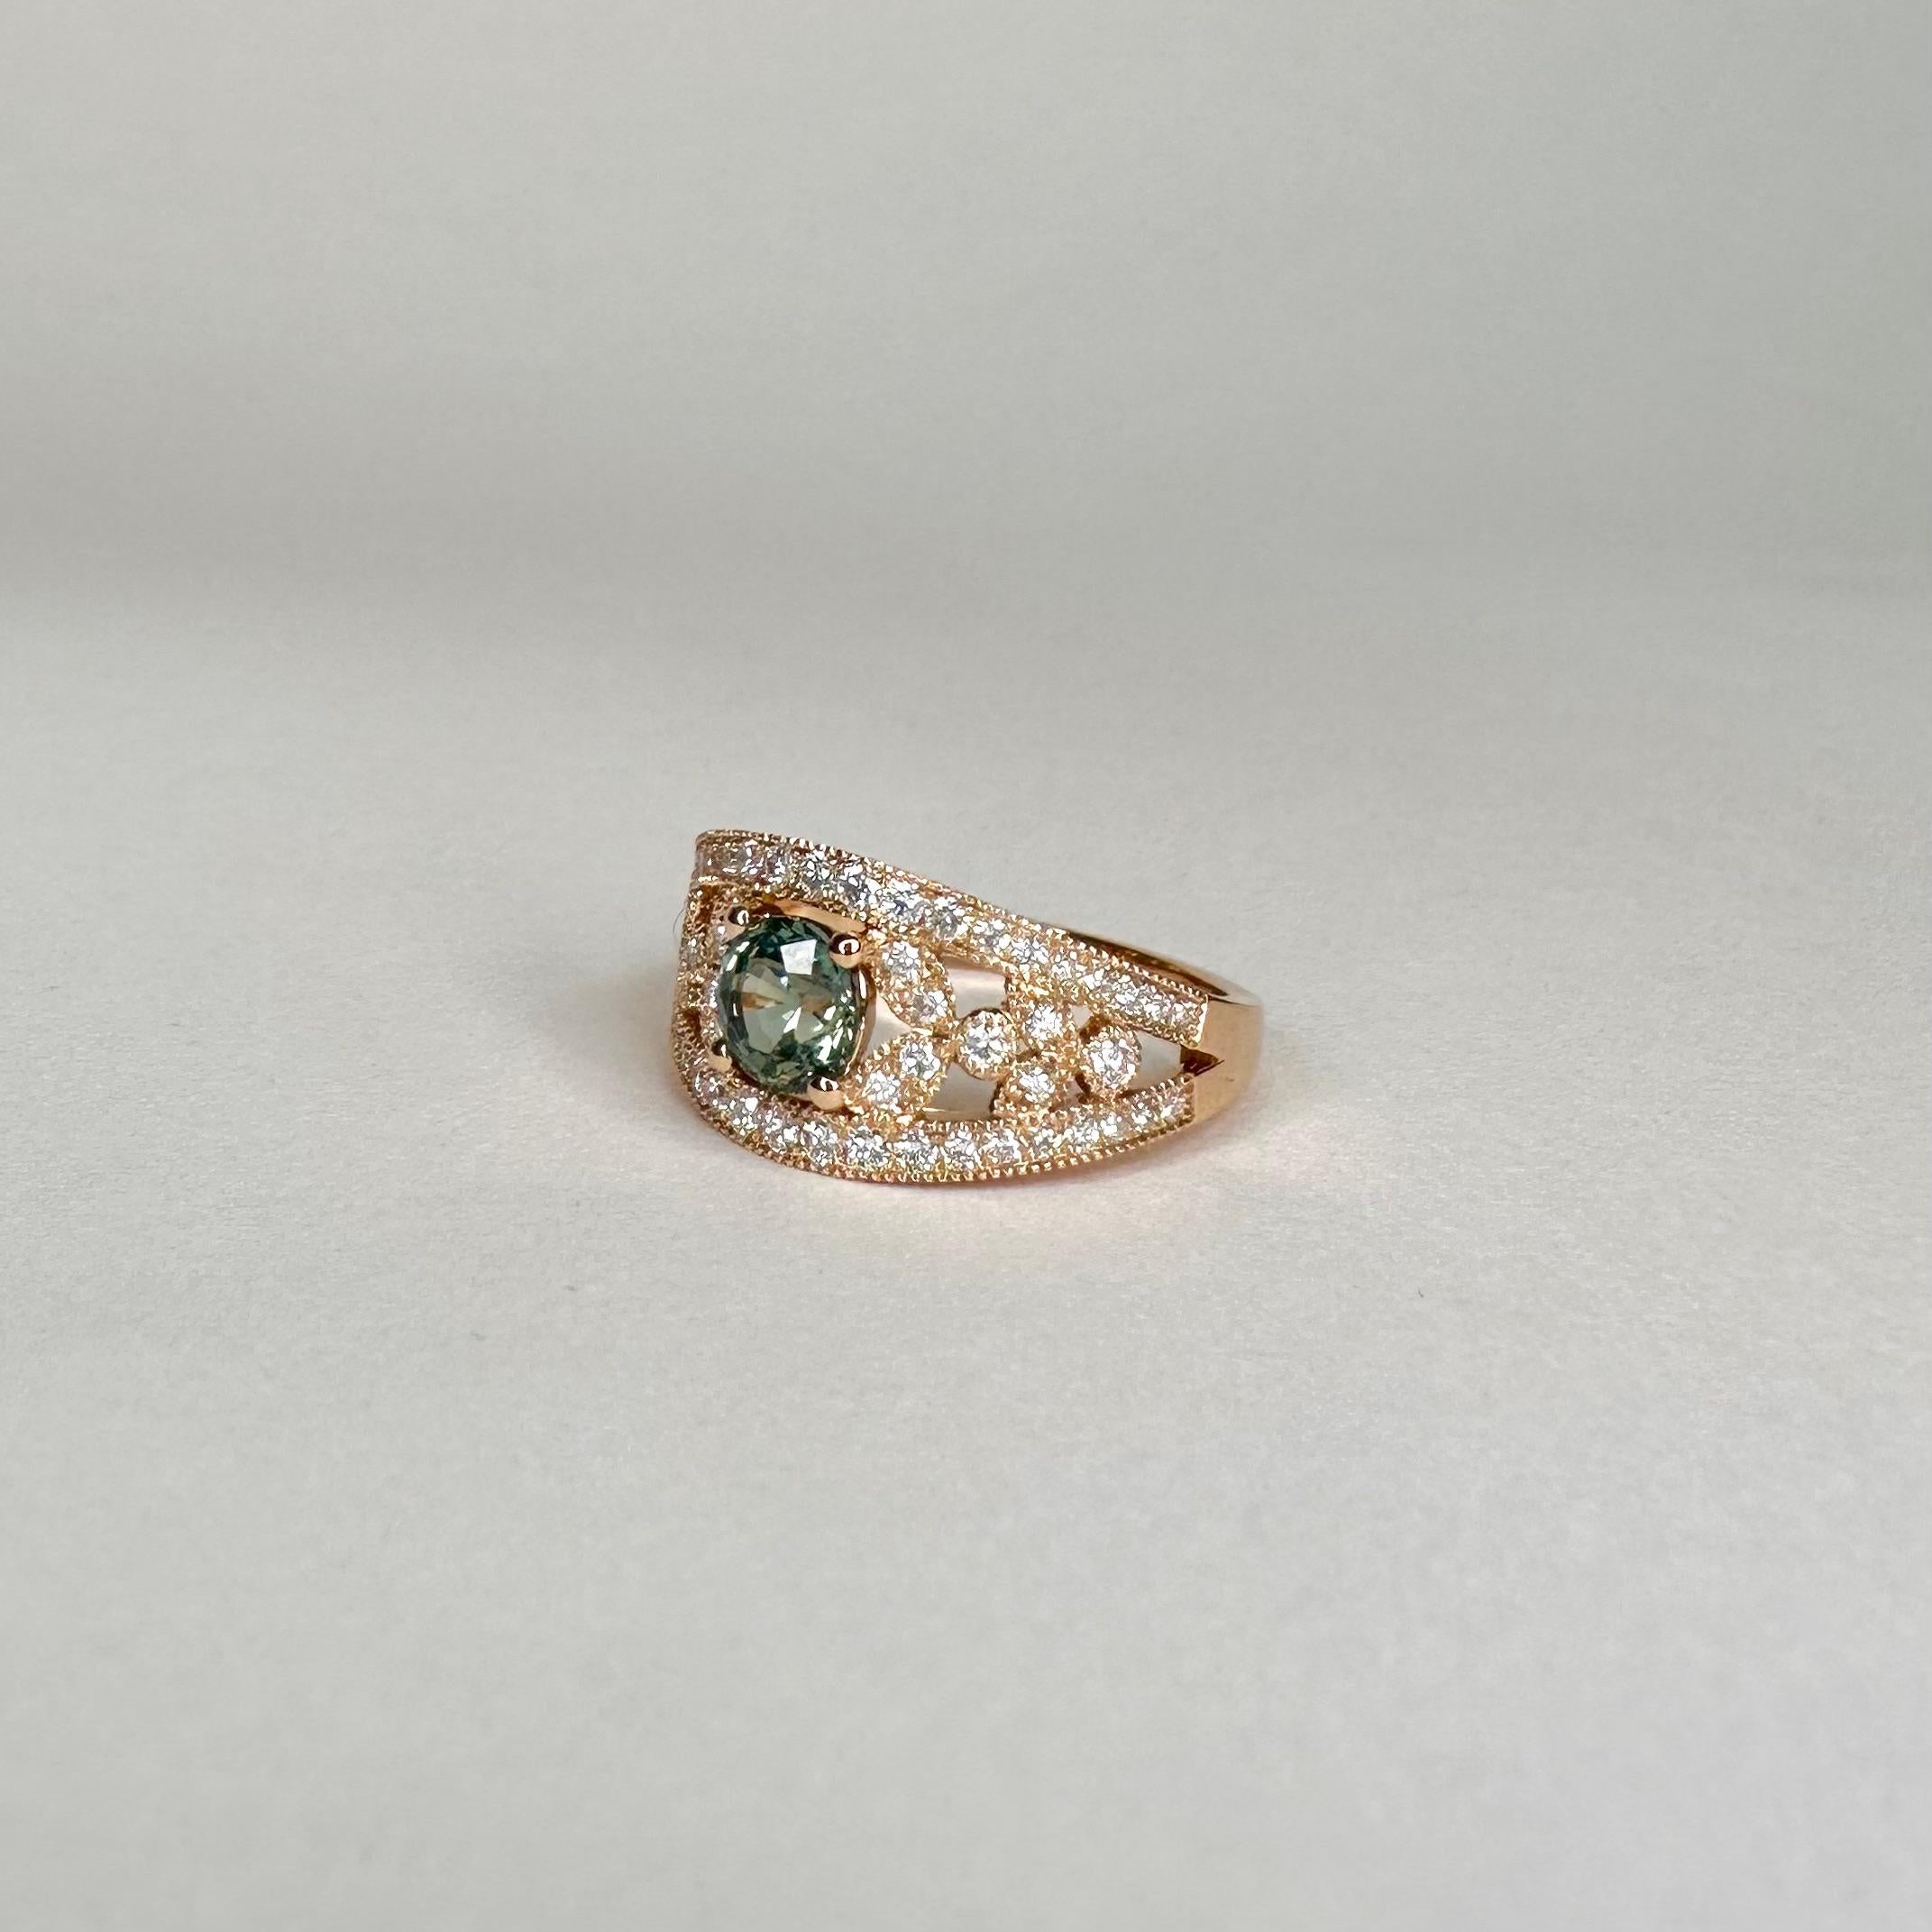 For Sale:  18k Rose Gold Laurel Leaf Design Blue Green Sapphire Ring Set with Diamonds 3